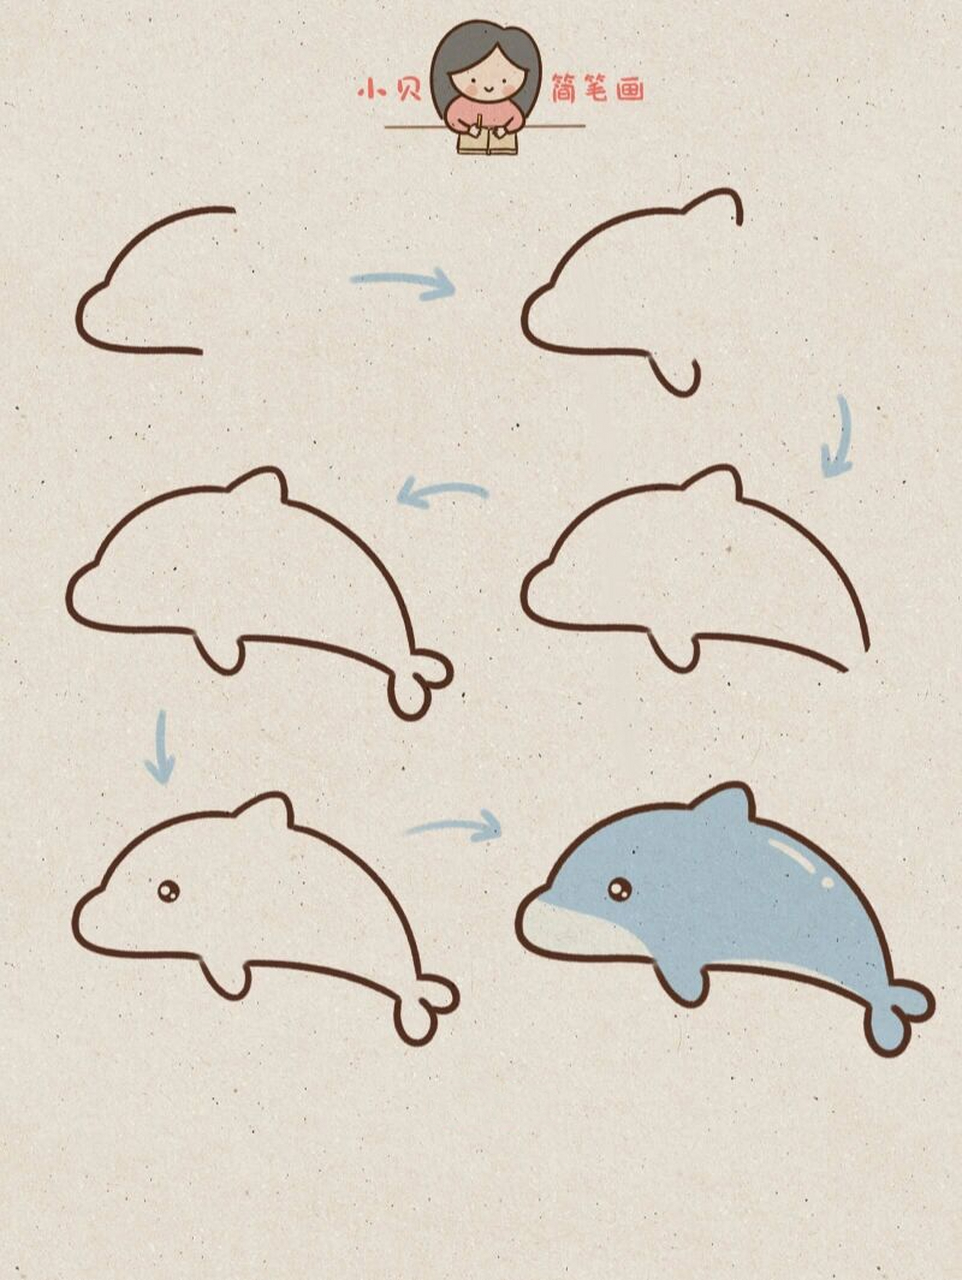 海豚简笔画 卡通简单图片